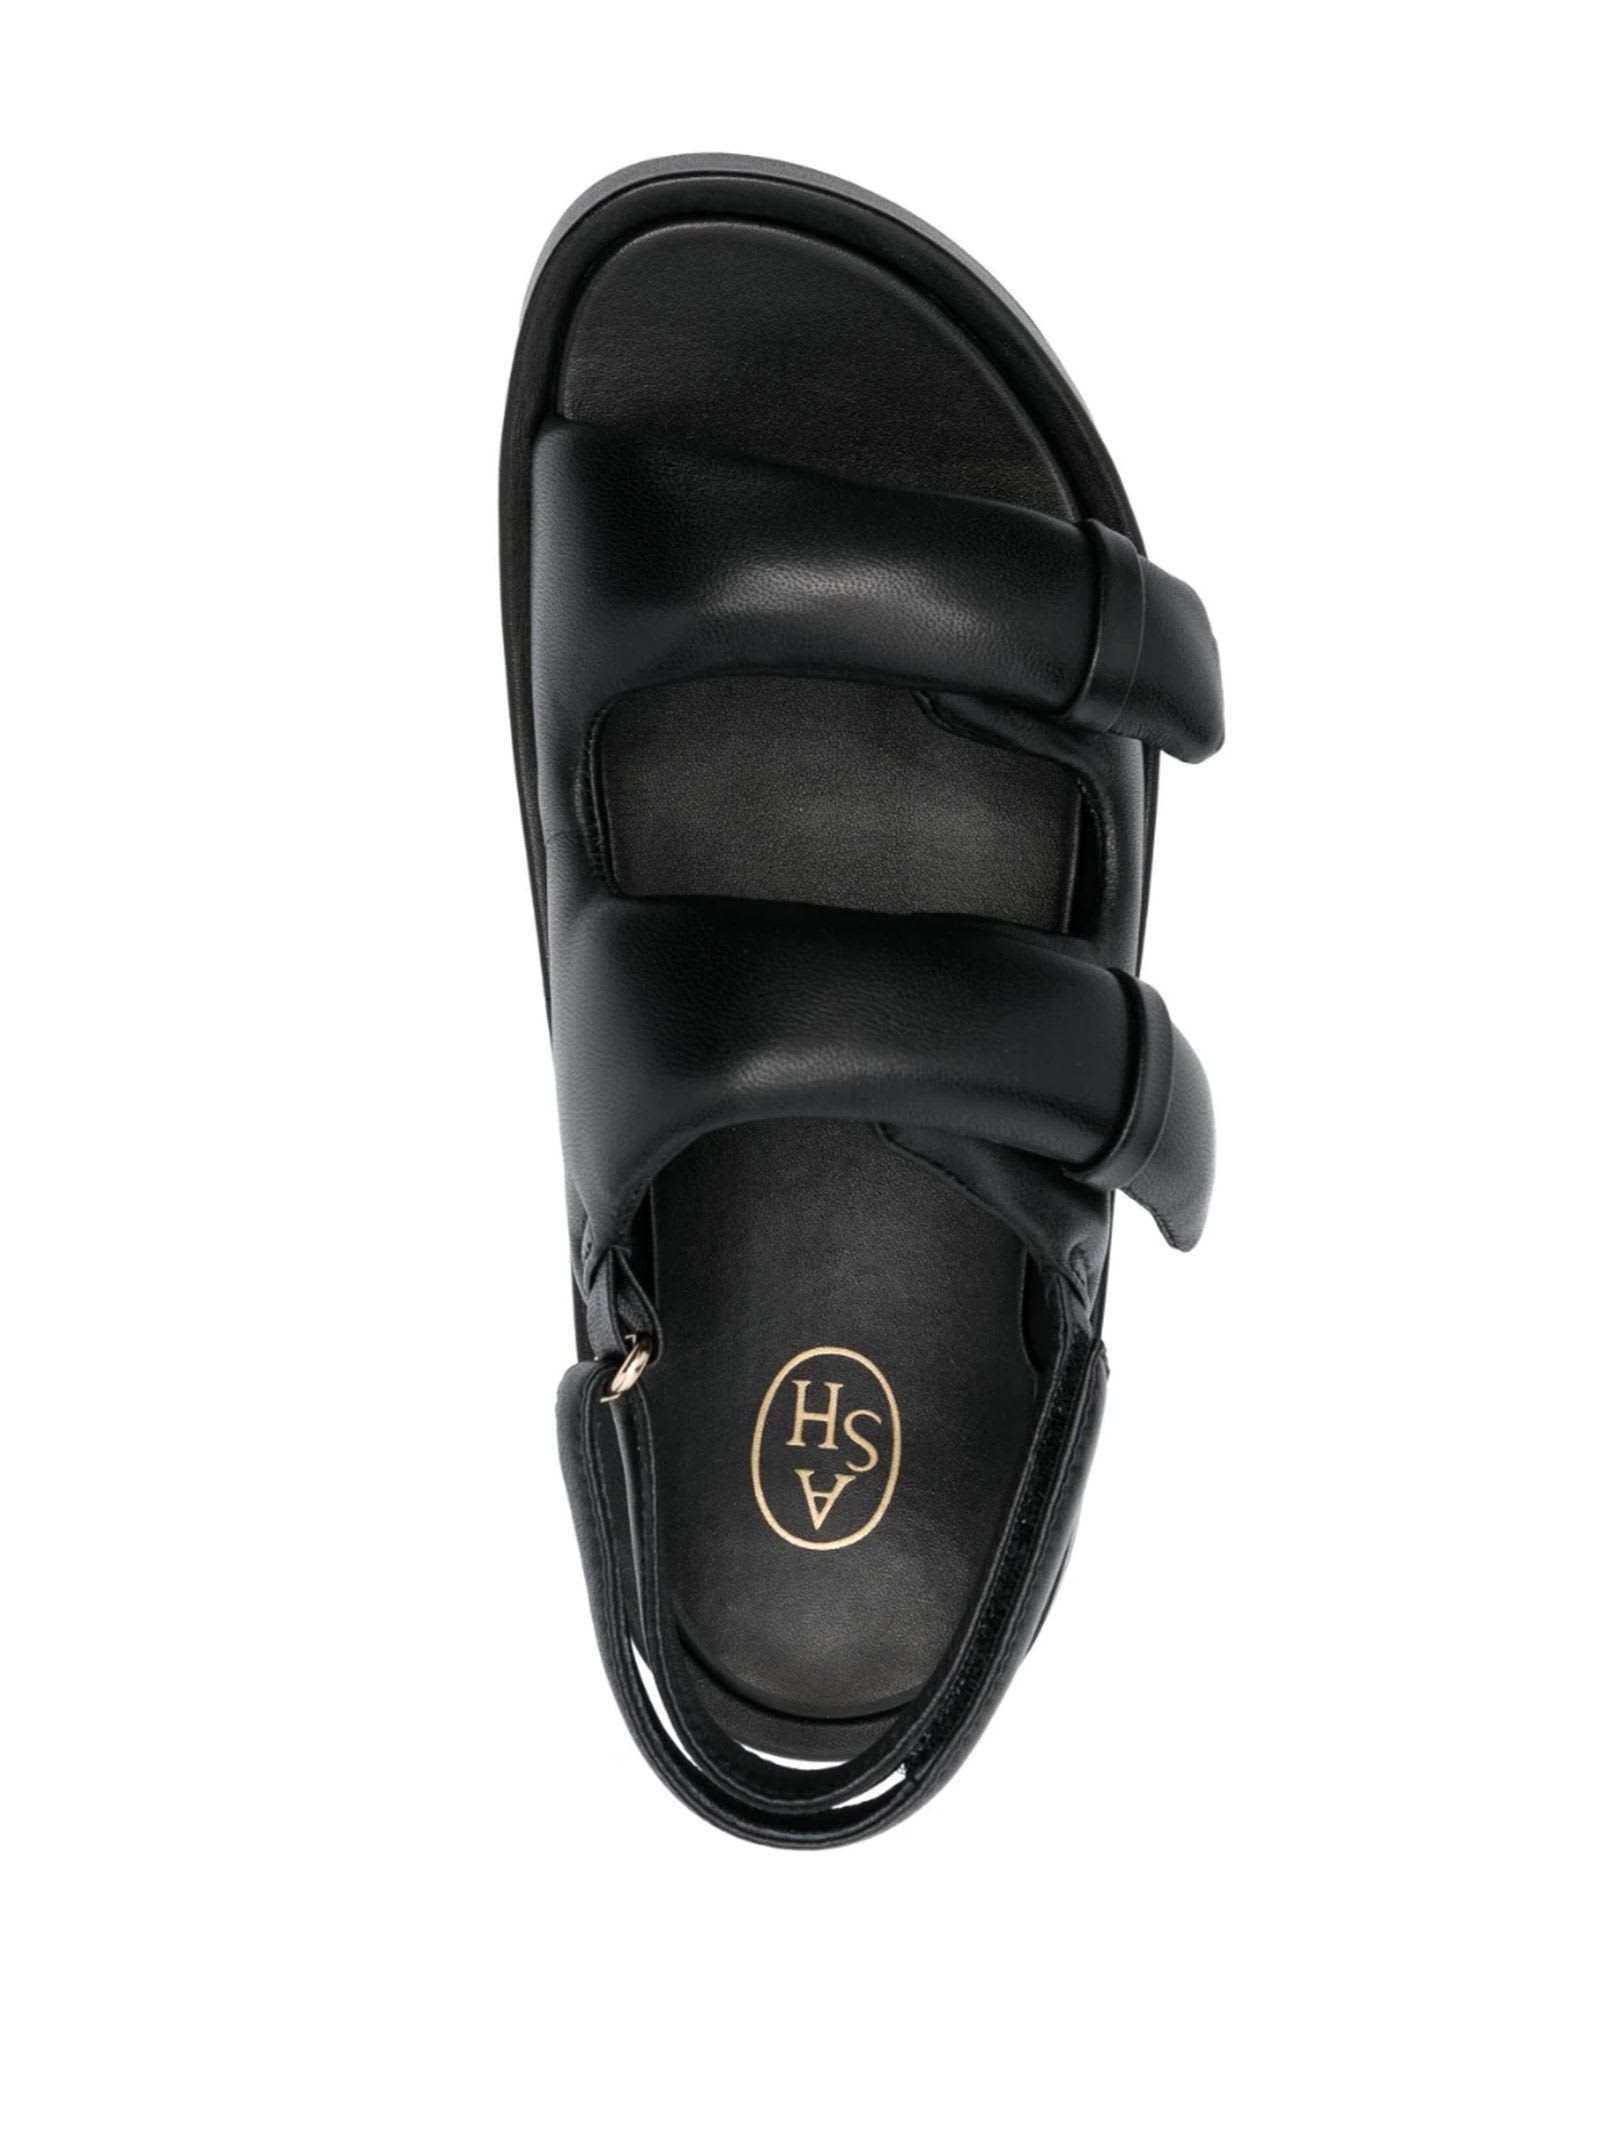 Shop Ash Black Calf Leather Vinci Sandals